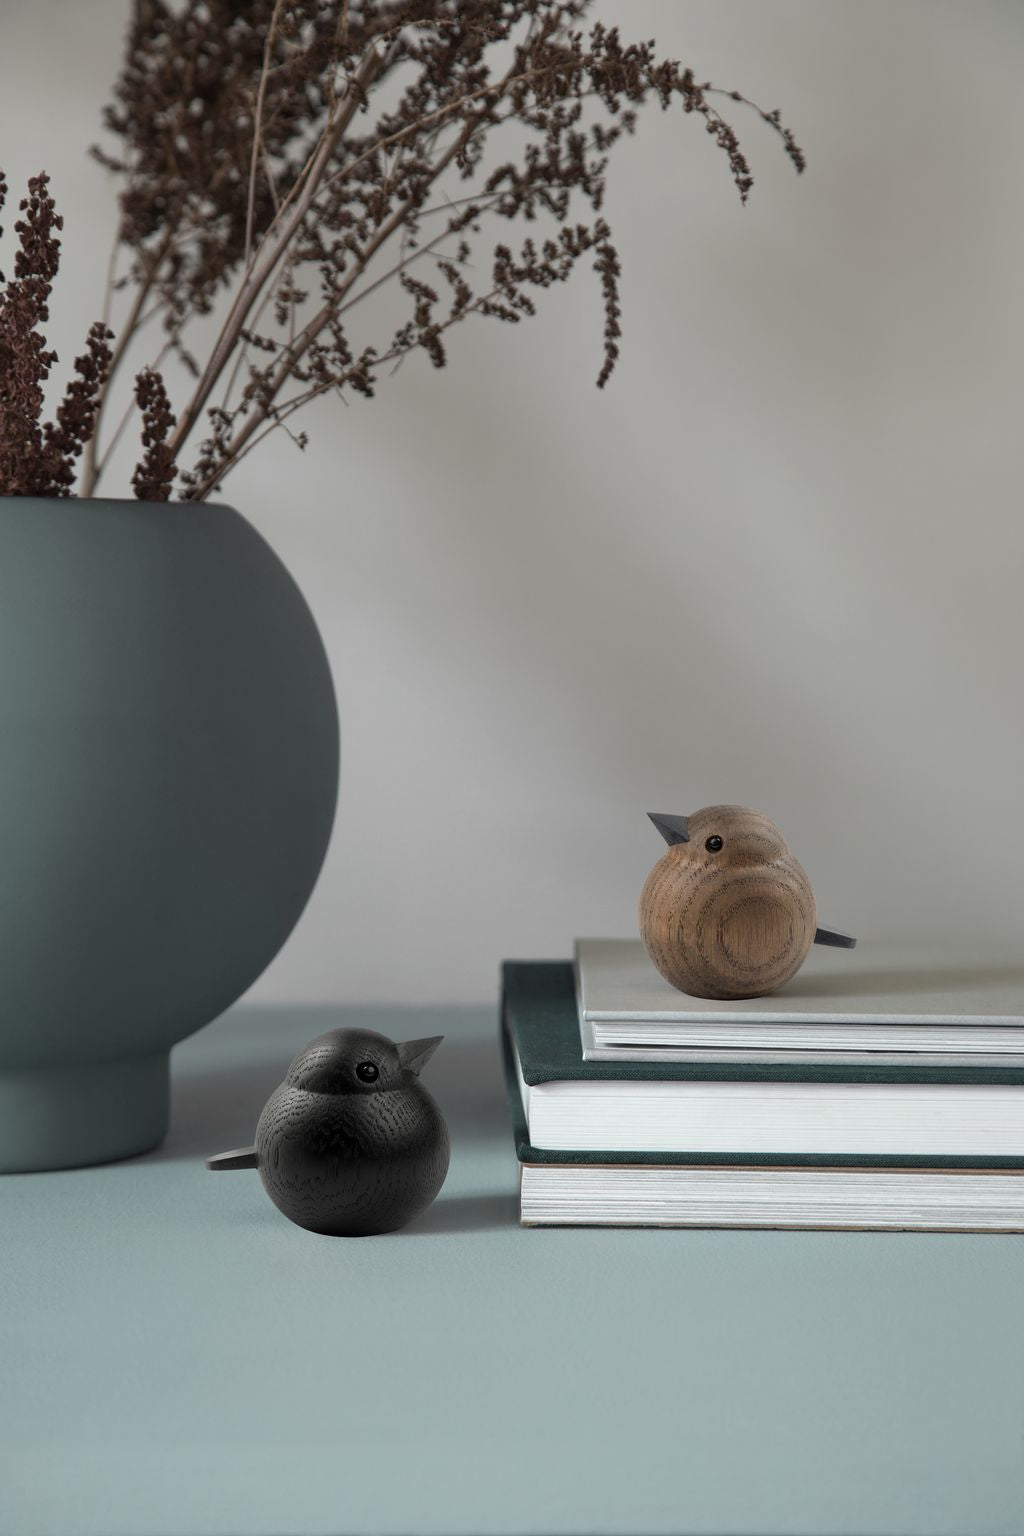 Design Novoform Mini Figura decorativa del passero, quercia macchiata nera